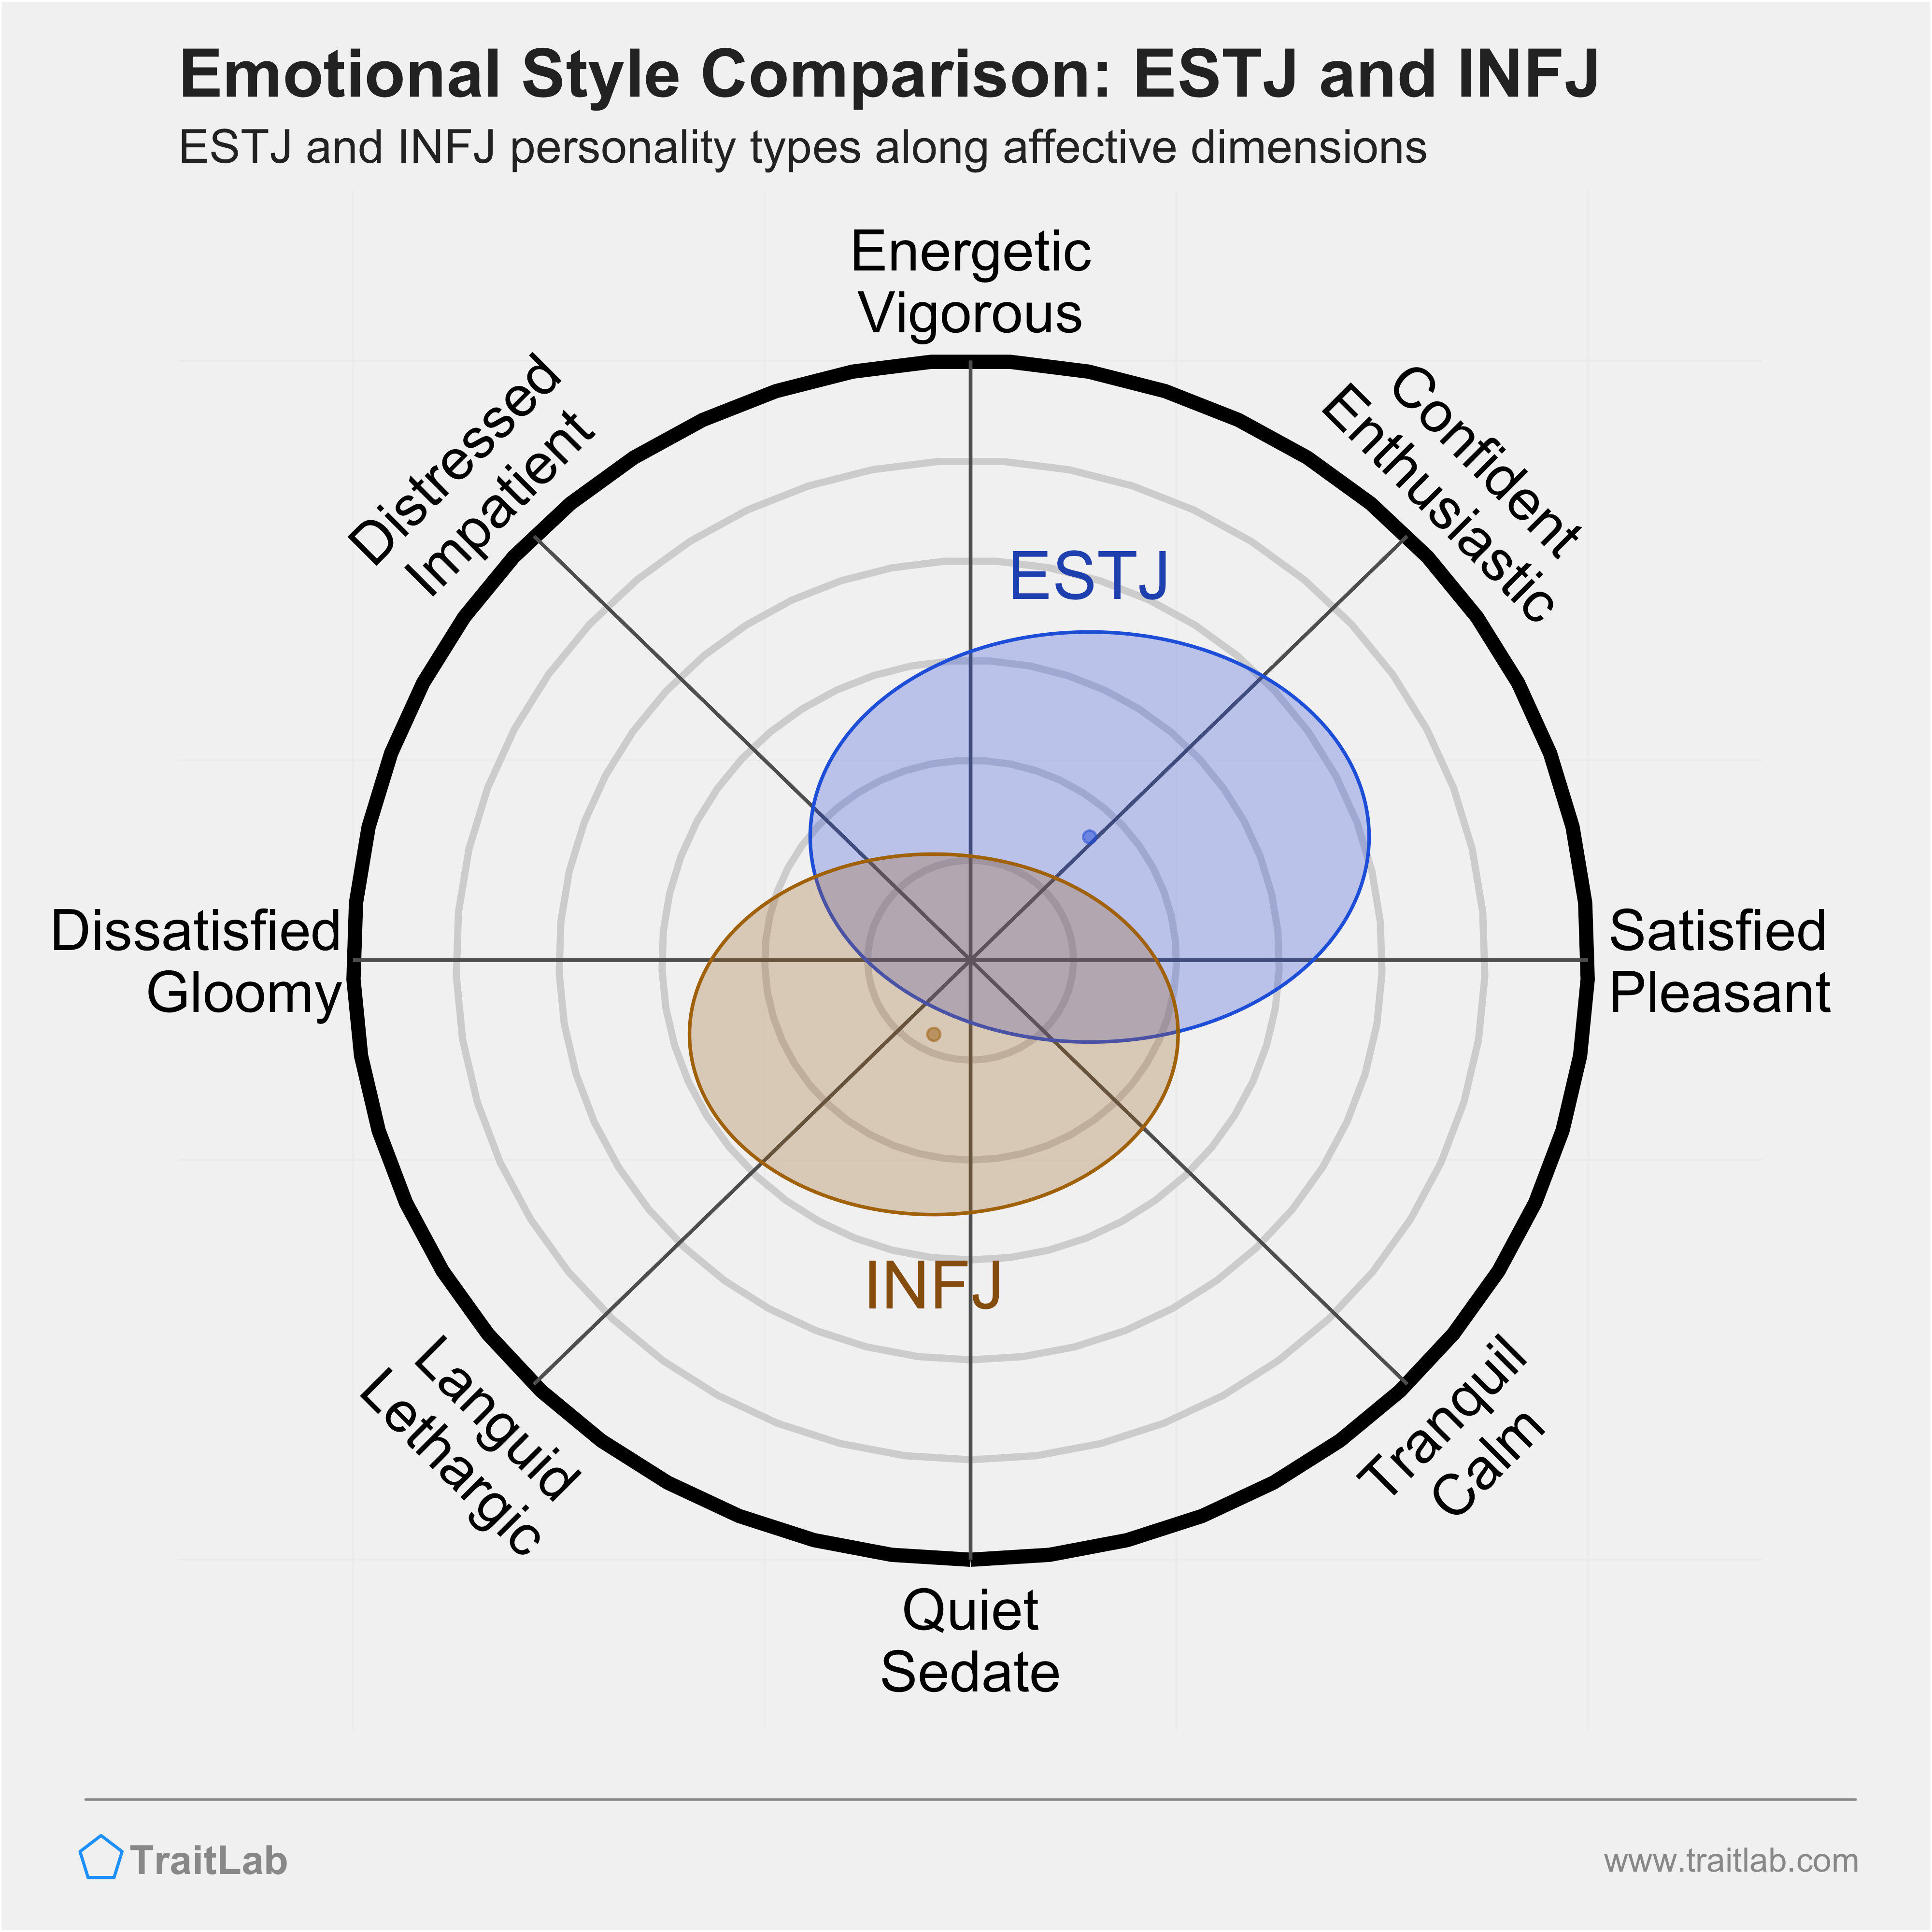 ESTJ and INFJ comparison across emotional (affective) dimensions